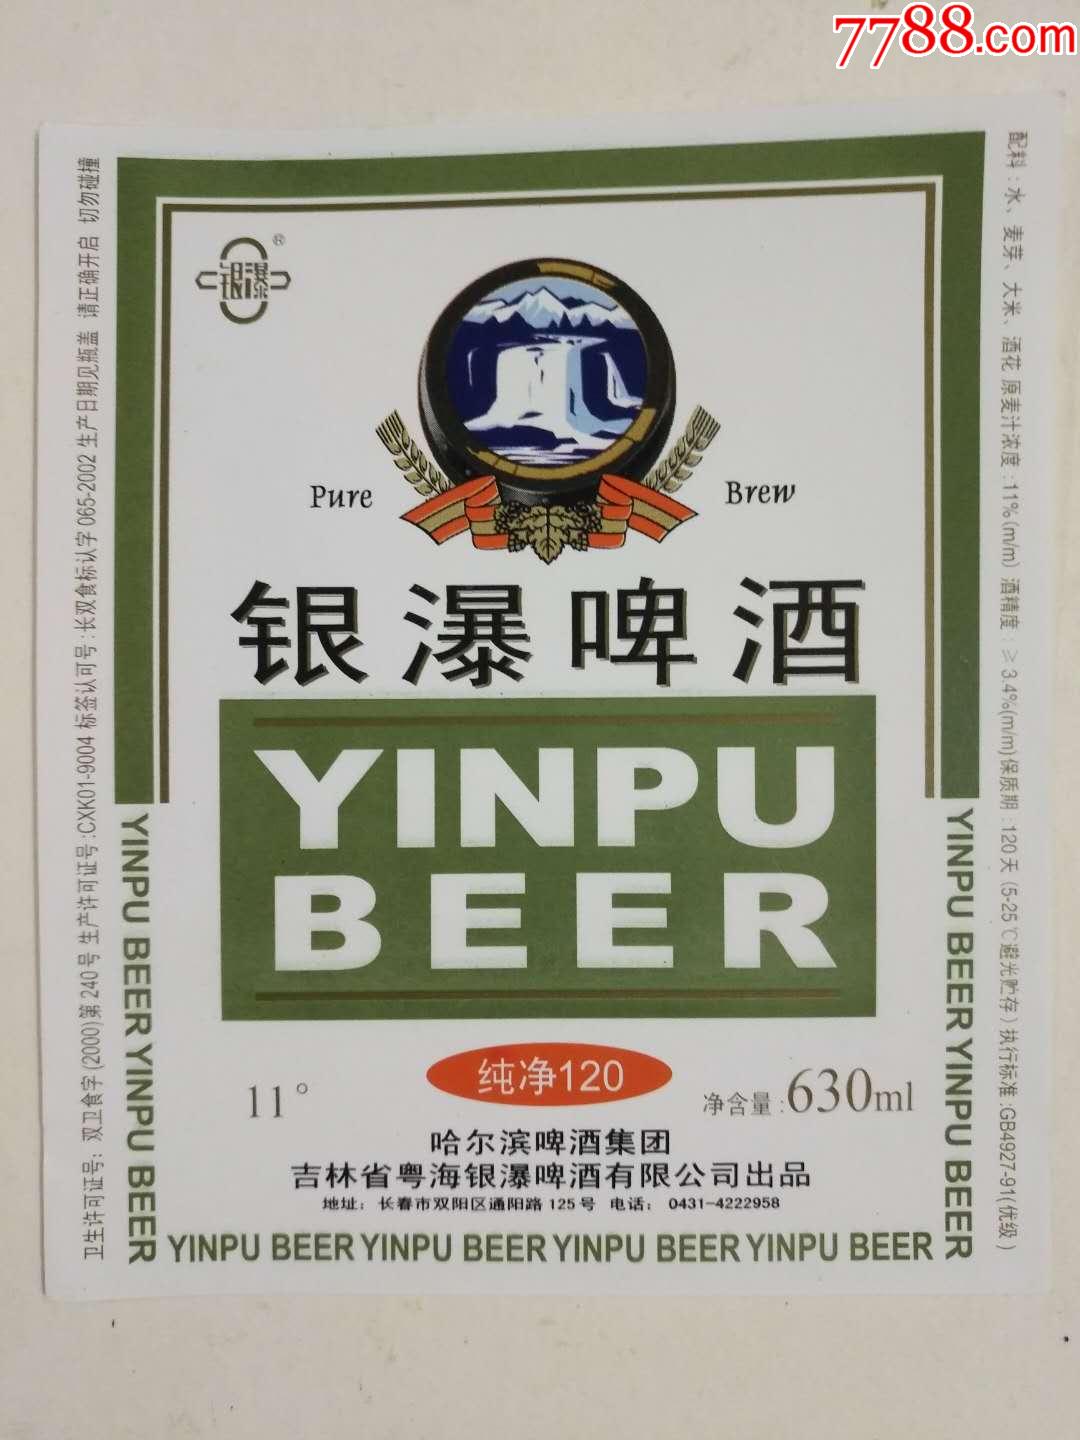 银瀑啤酒标,吉林粤海银瀑啤酒有限公司出品